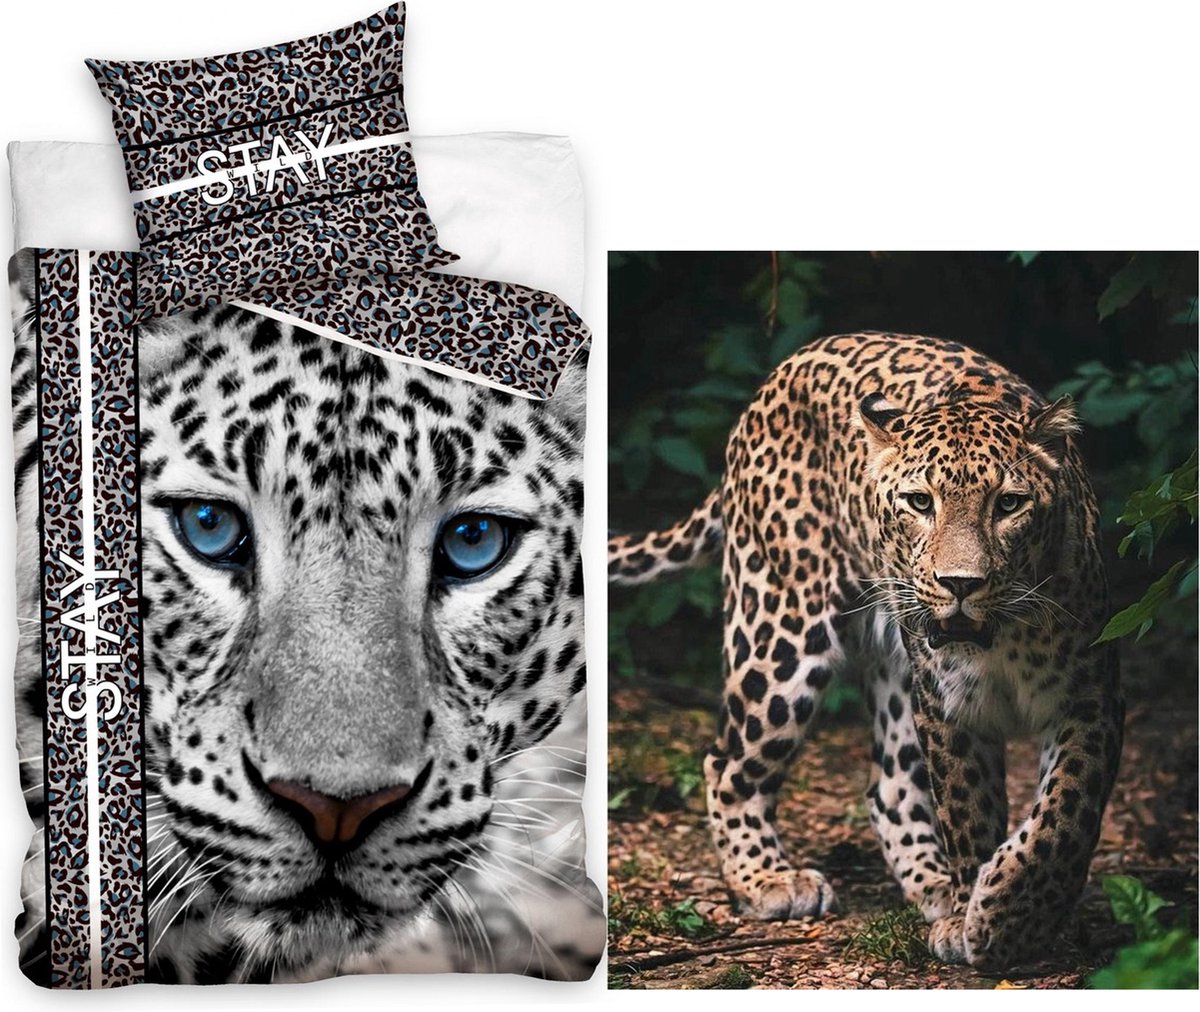 Dekbedovertrek Cheetah- Luipaard- kat- katoen- 140x200- incl. gave fleece-deken met Luipaard 120x150cm.